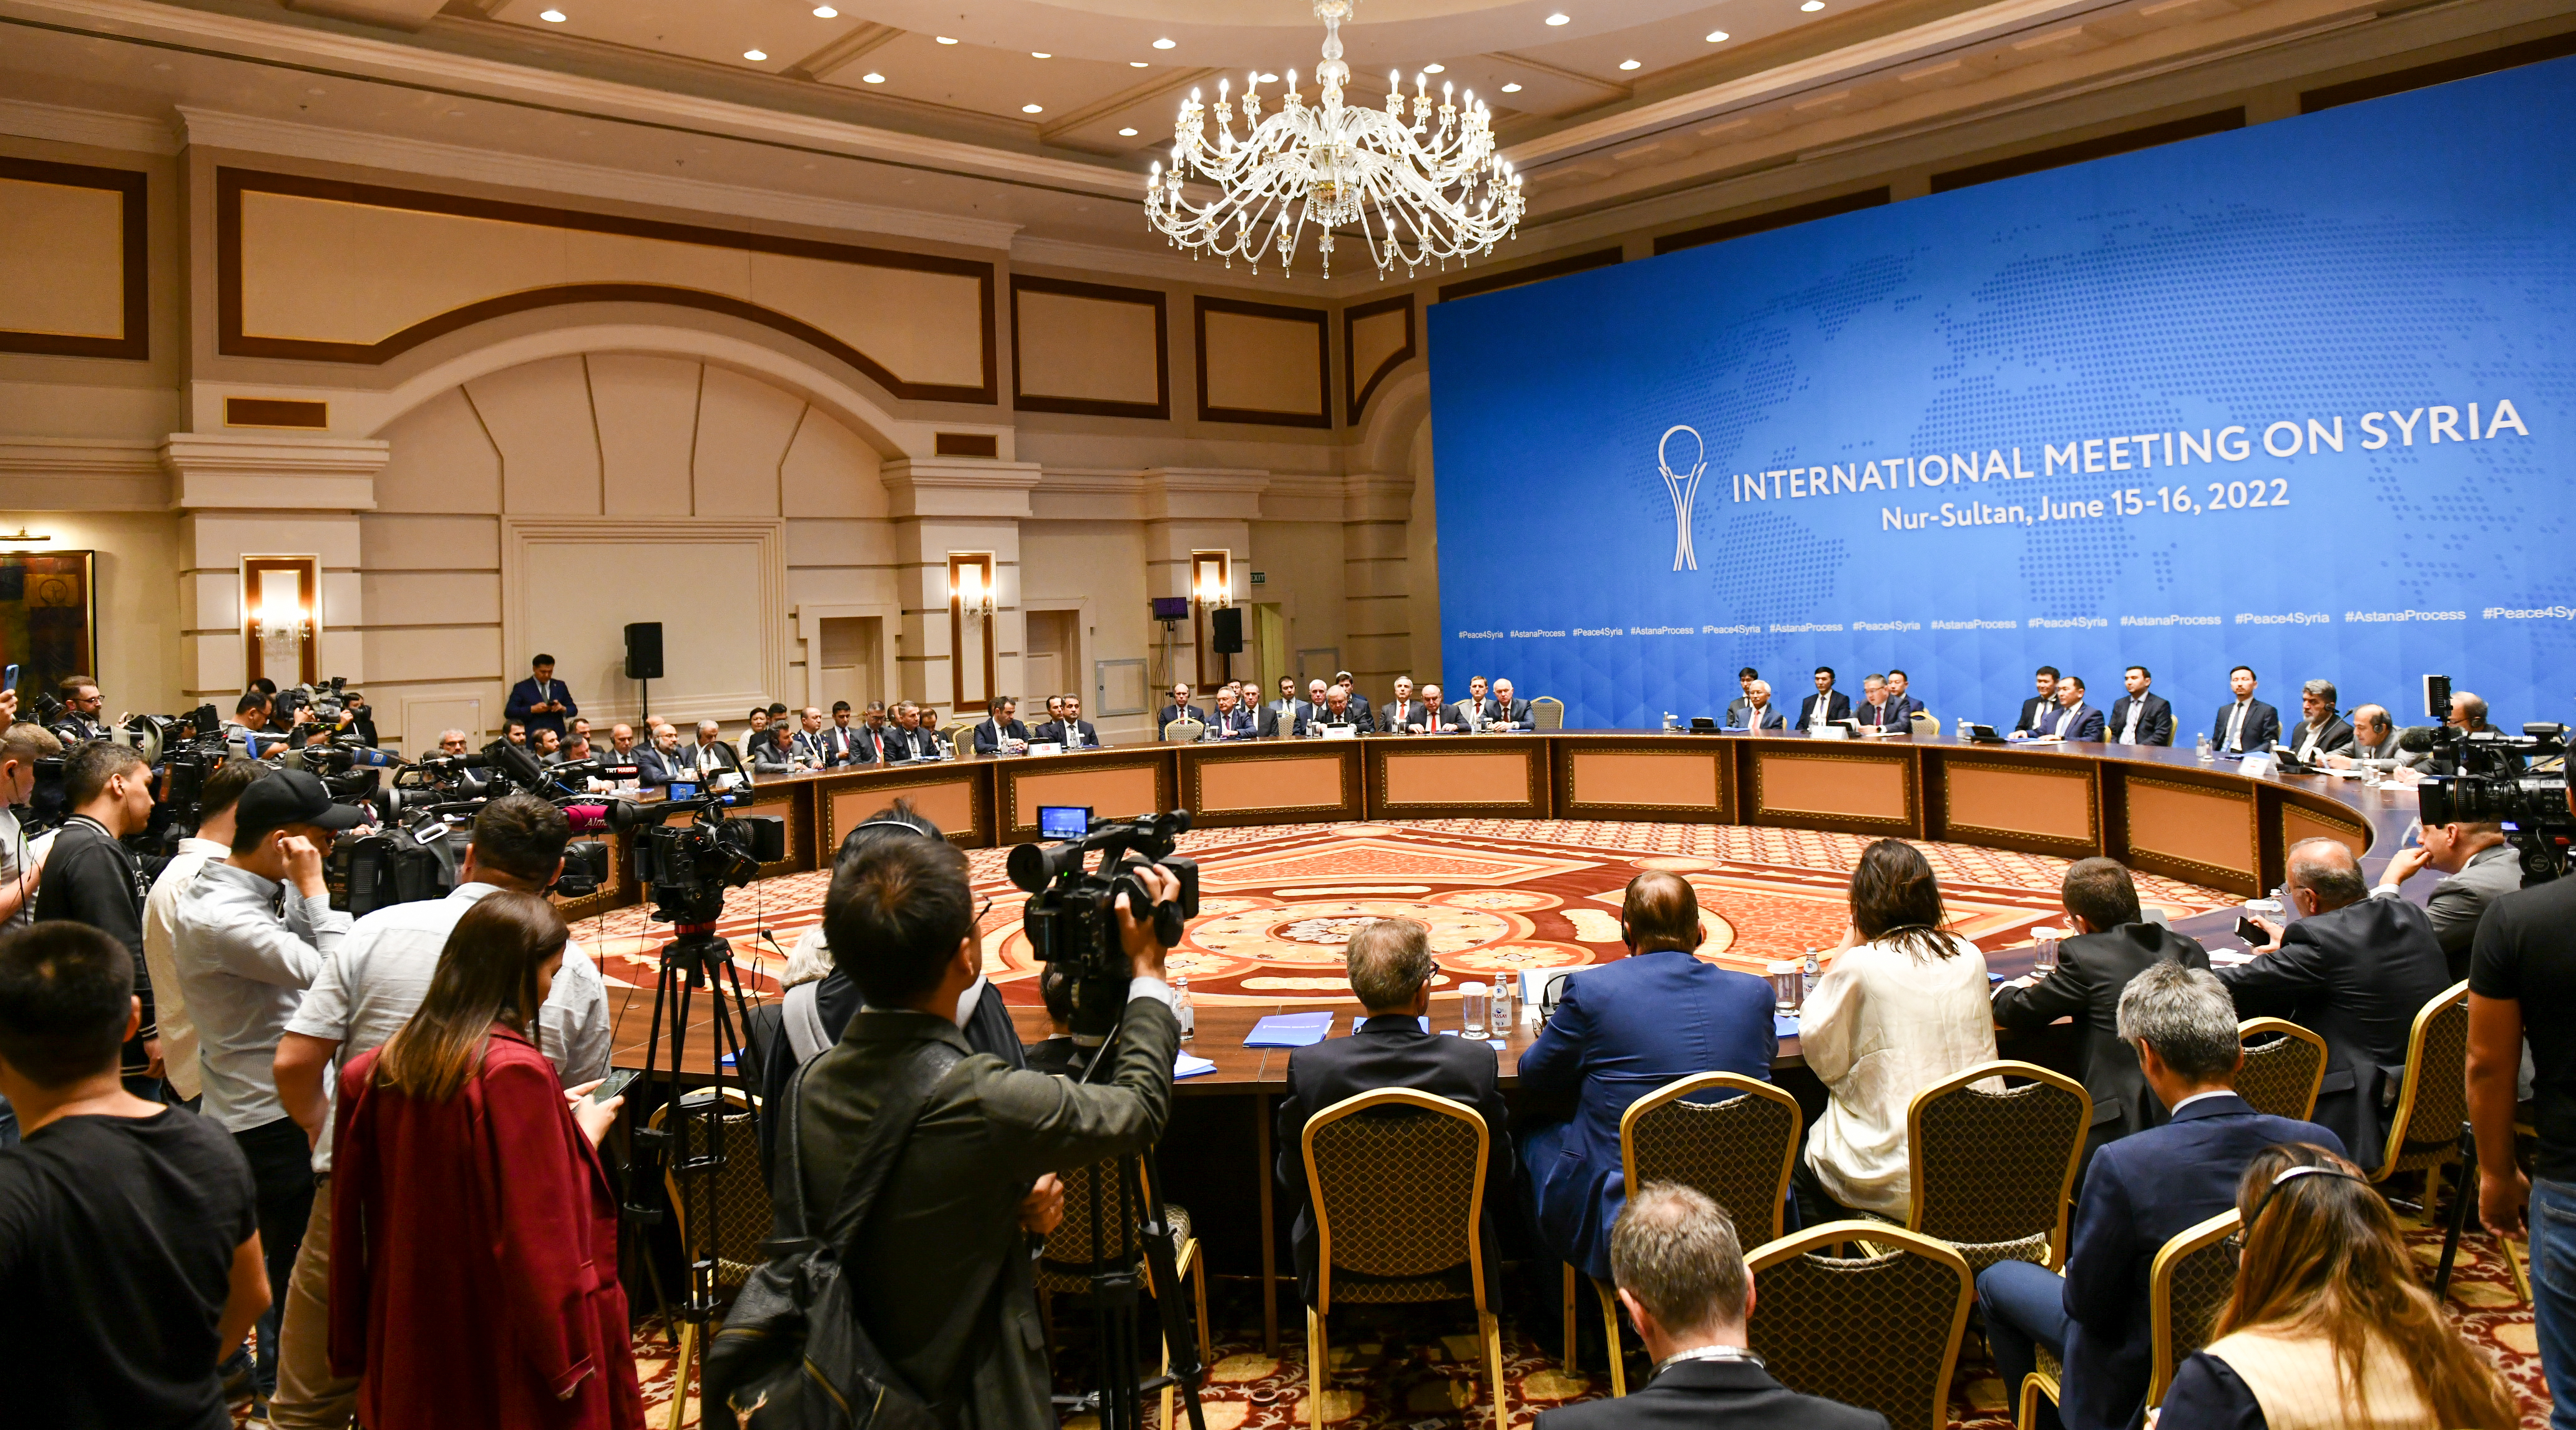 Совместное заявление представителей Ирана, России и Турции  по итогам 18-й Международной встречи по Сирии  в Астанинском формате